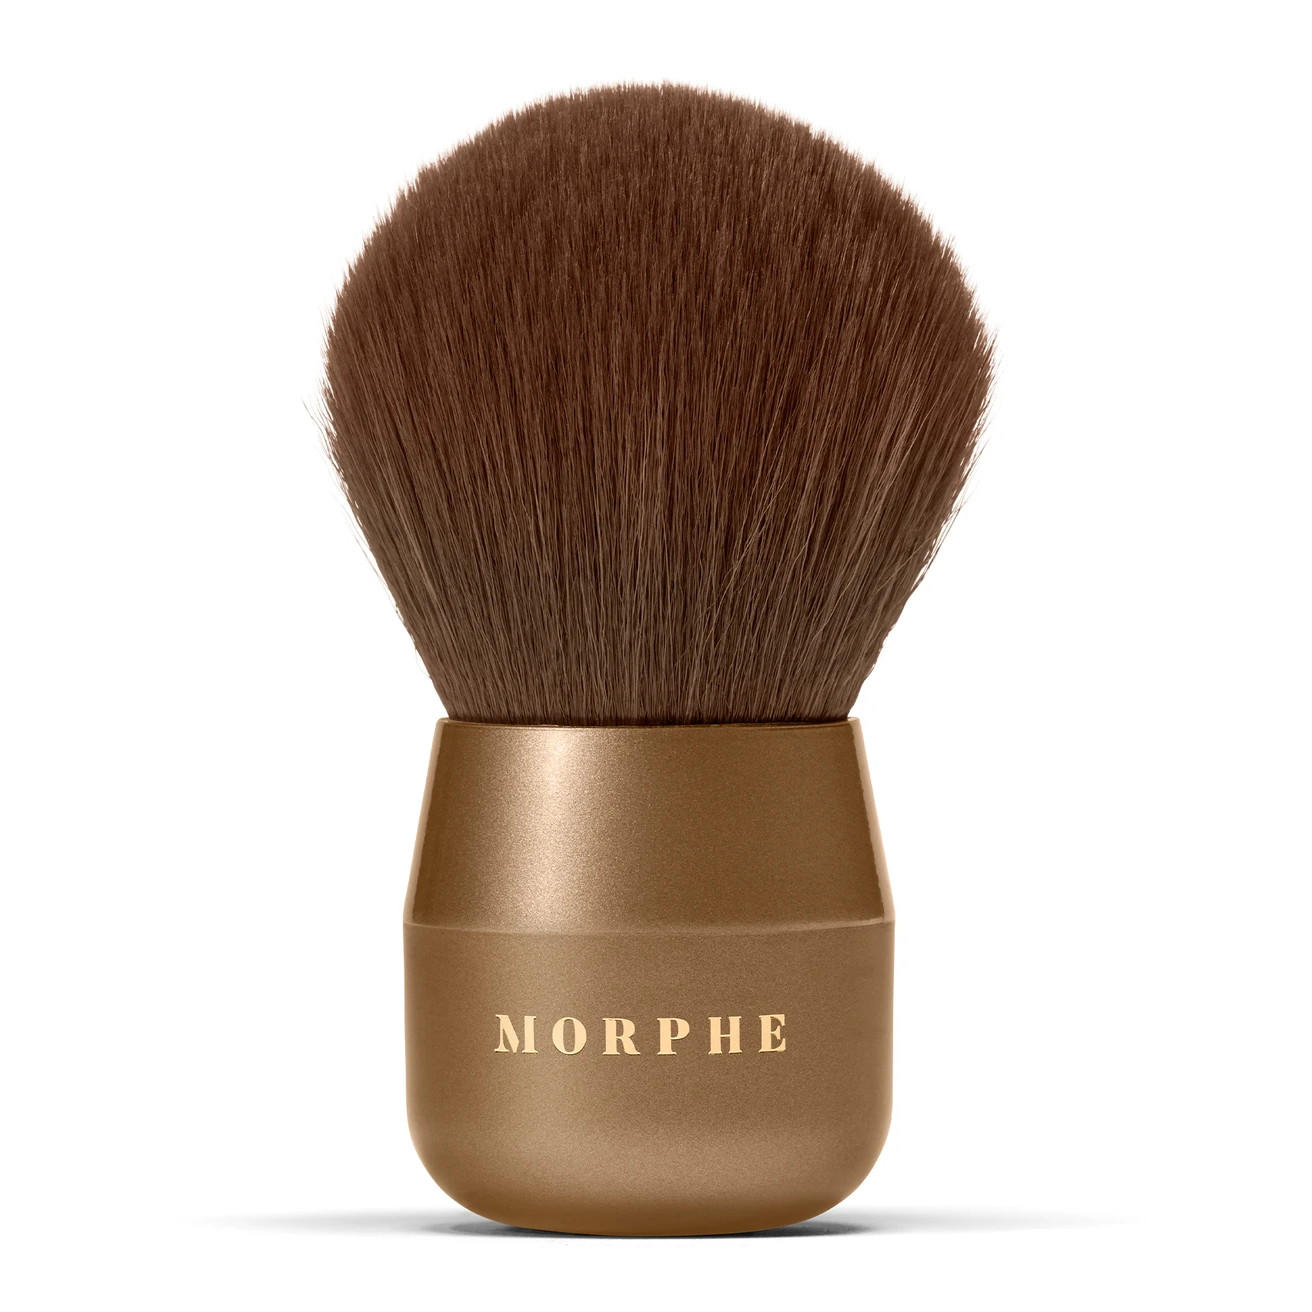 Morphe Glamabronze Deluxe Face & Body Bronzer Brush